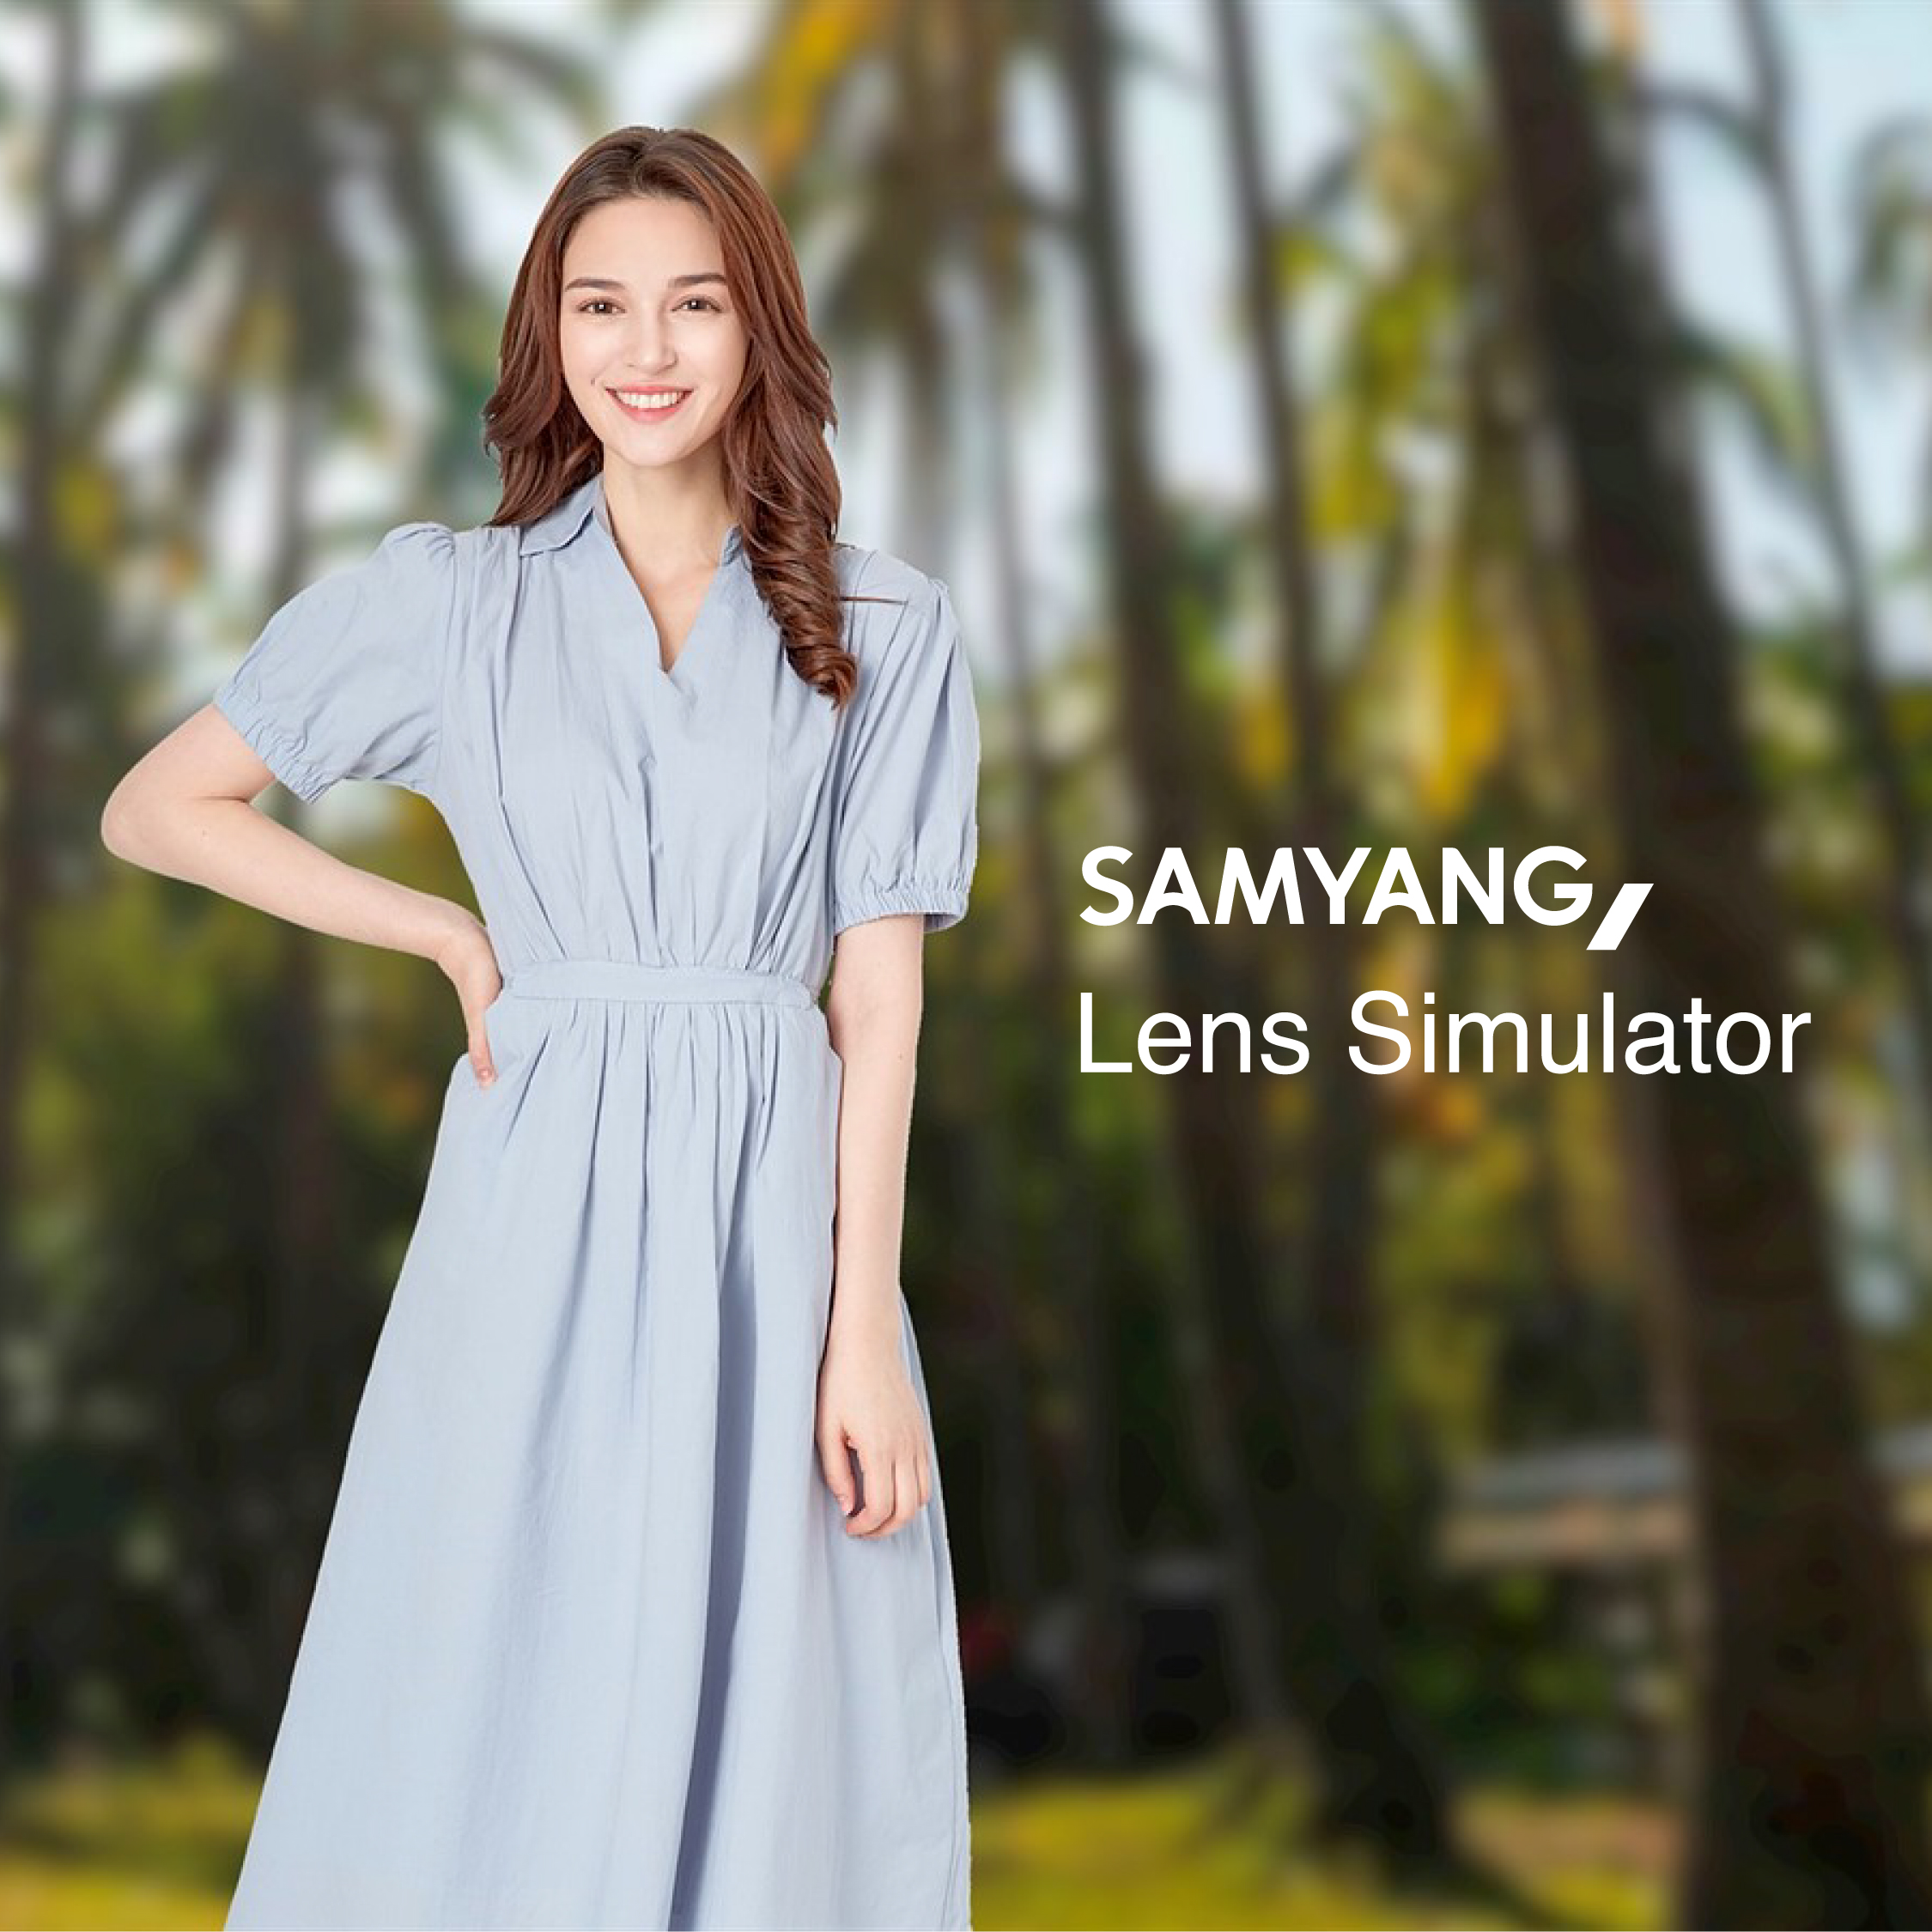 Samyang Lens Simulator